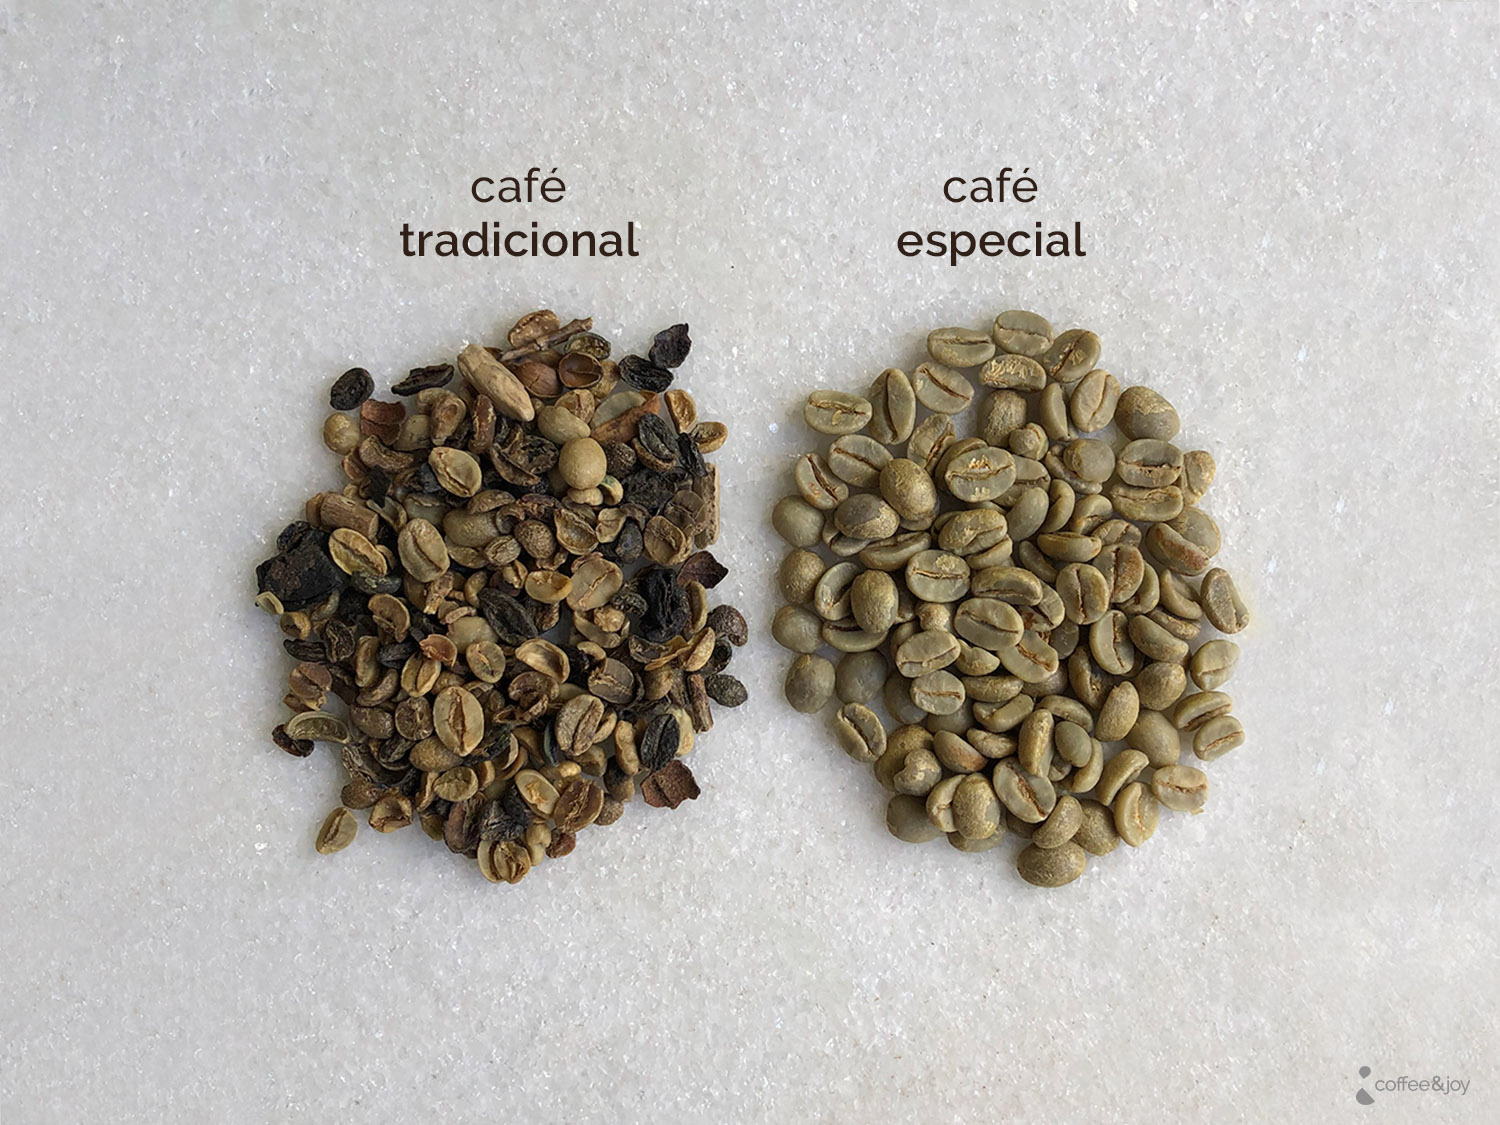 Café Orgânico vs Café Tradicional: descubra as diferenças